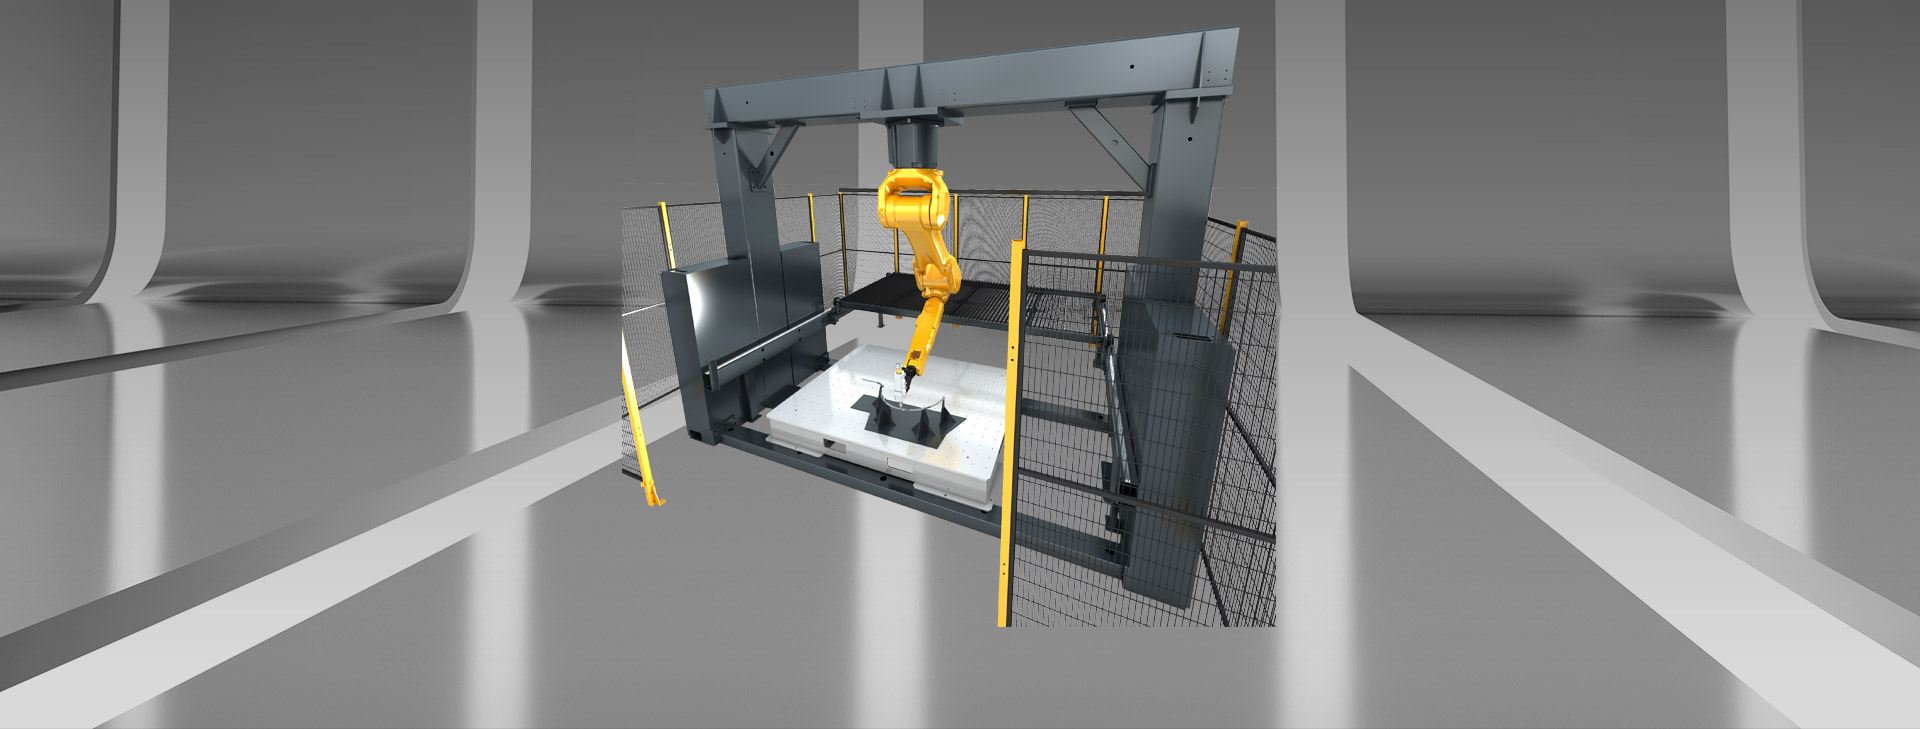 3D 로봇 레이저 절단기 미사일구조물 구조